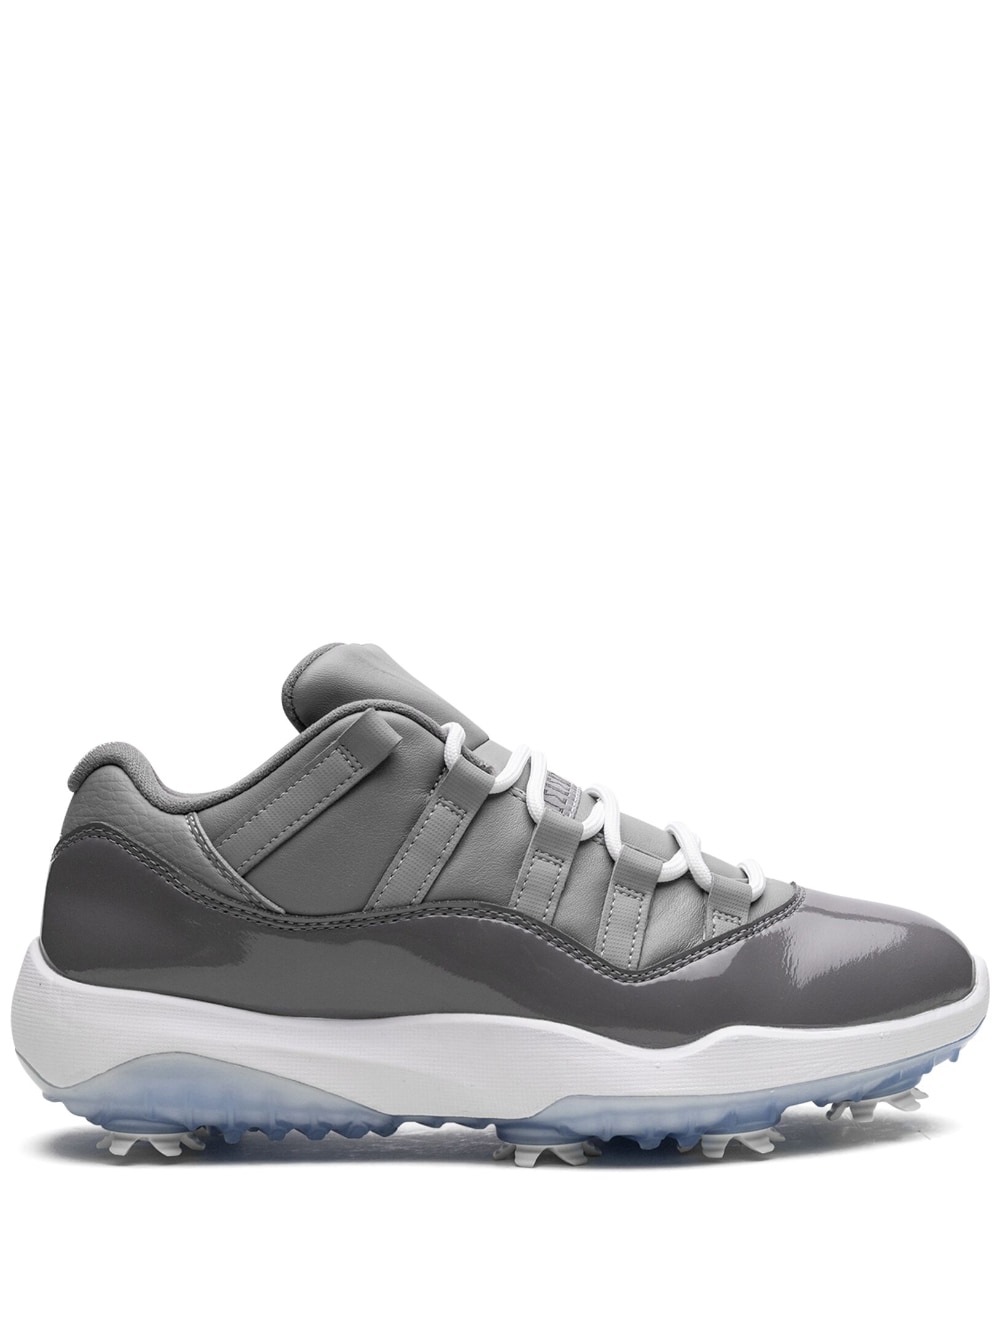 Jordan Jordan XI Golf sneakers - Grey